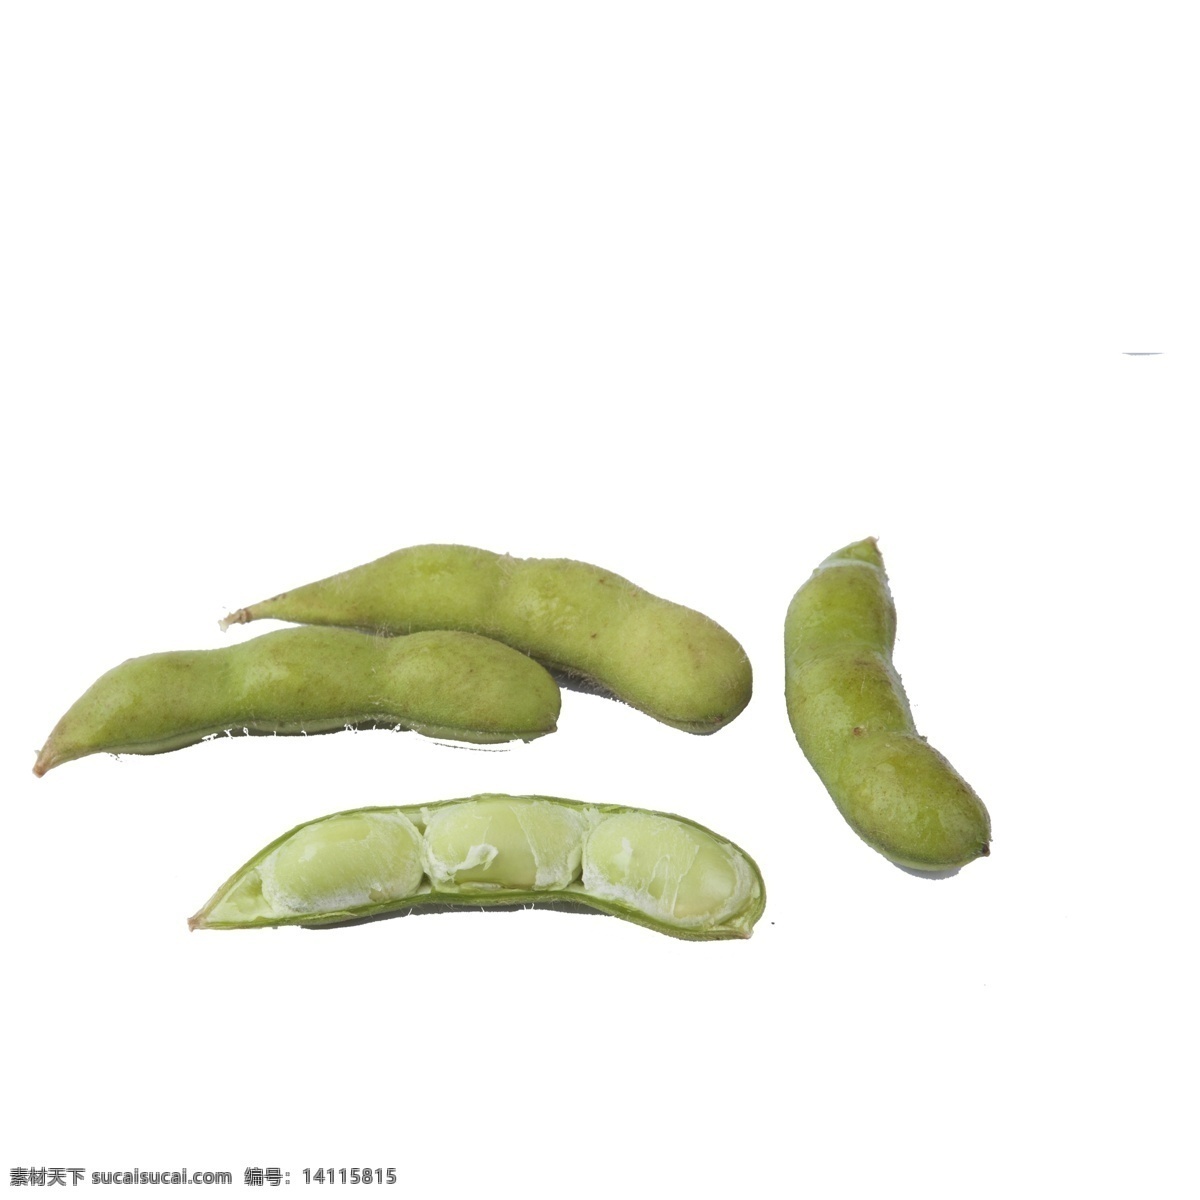 绿色 荷兰豆 免 抠 图 绿色植物 豆子 美味的豆子 豆子植物 新鲜植物果实 蔬菜 绿色的荷兰豆 免抠图